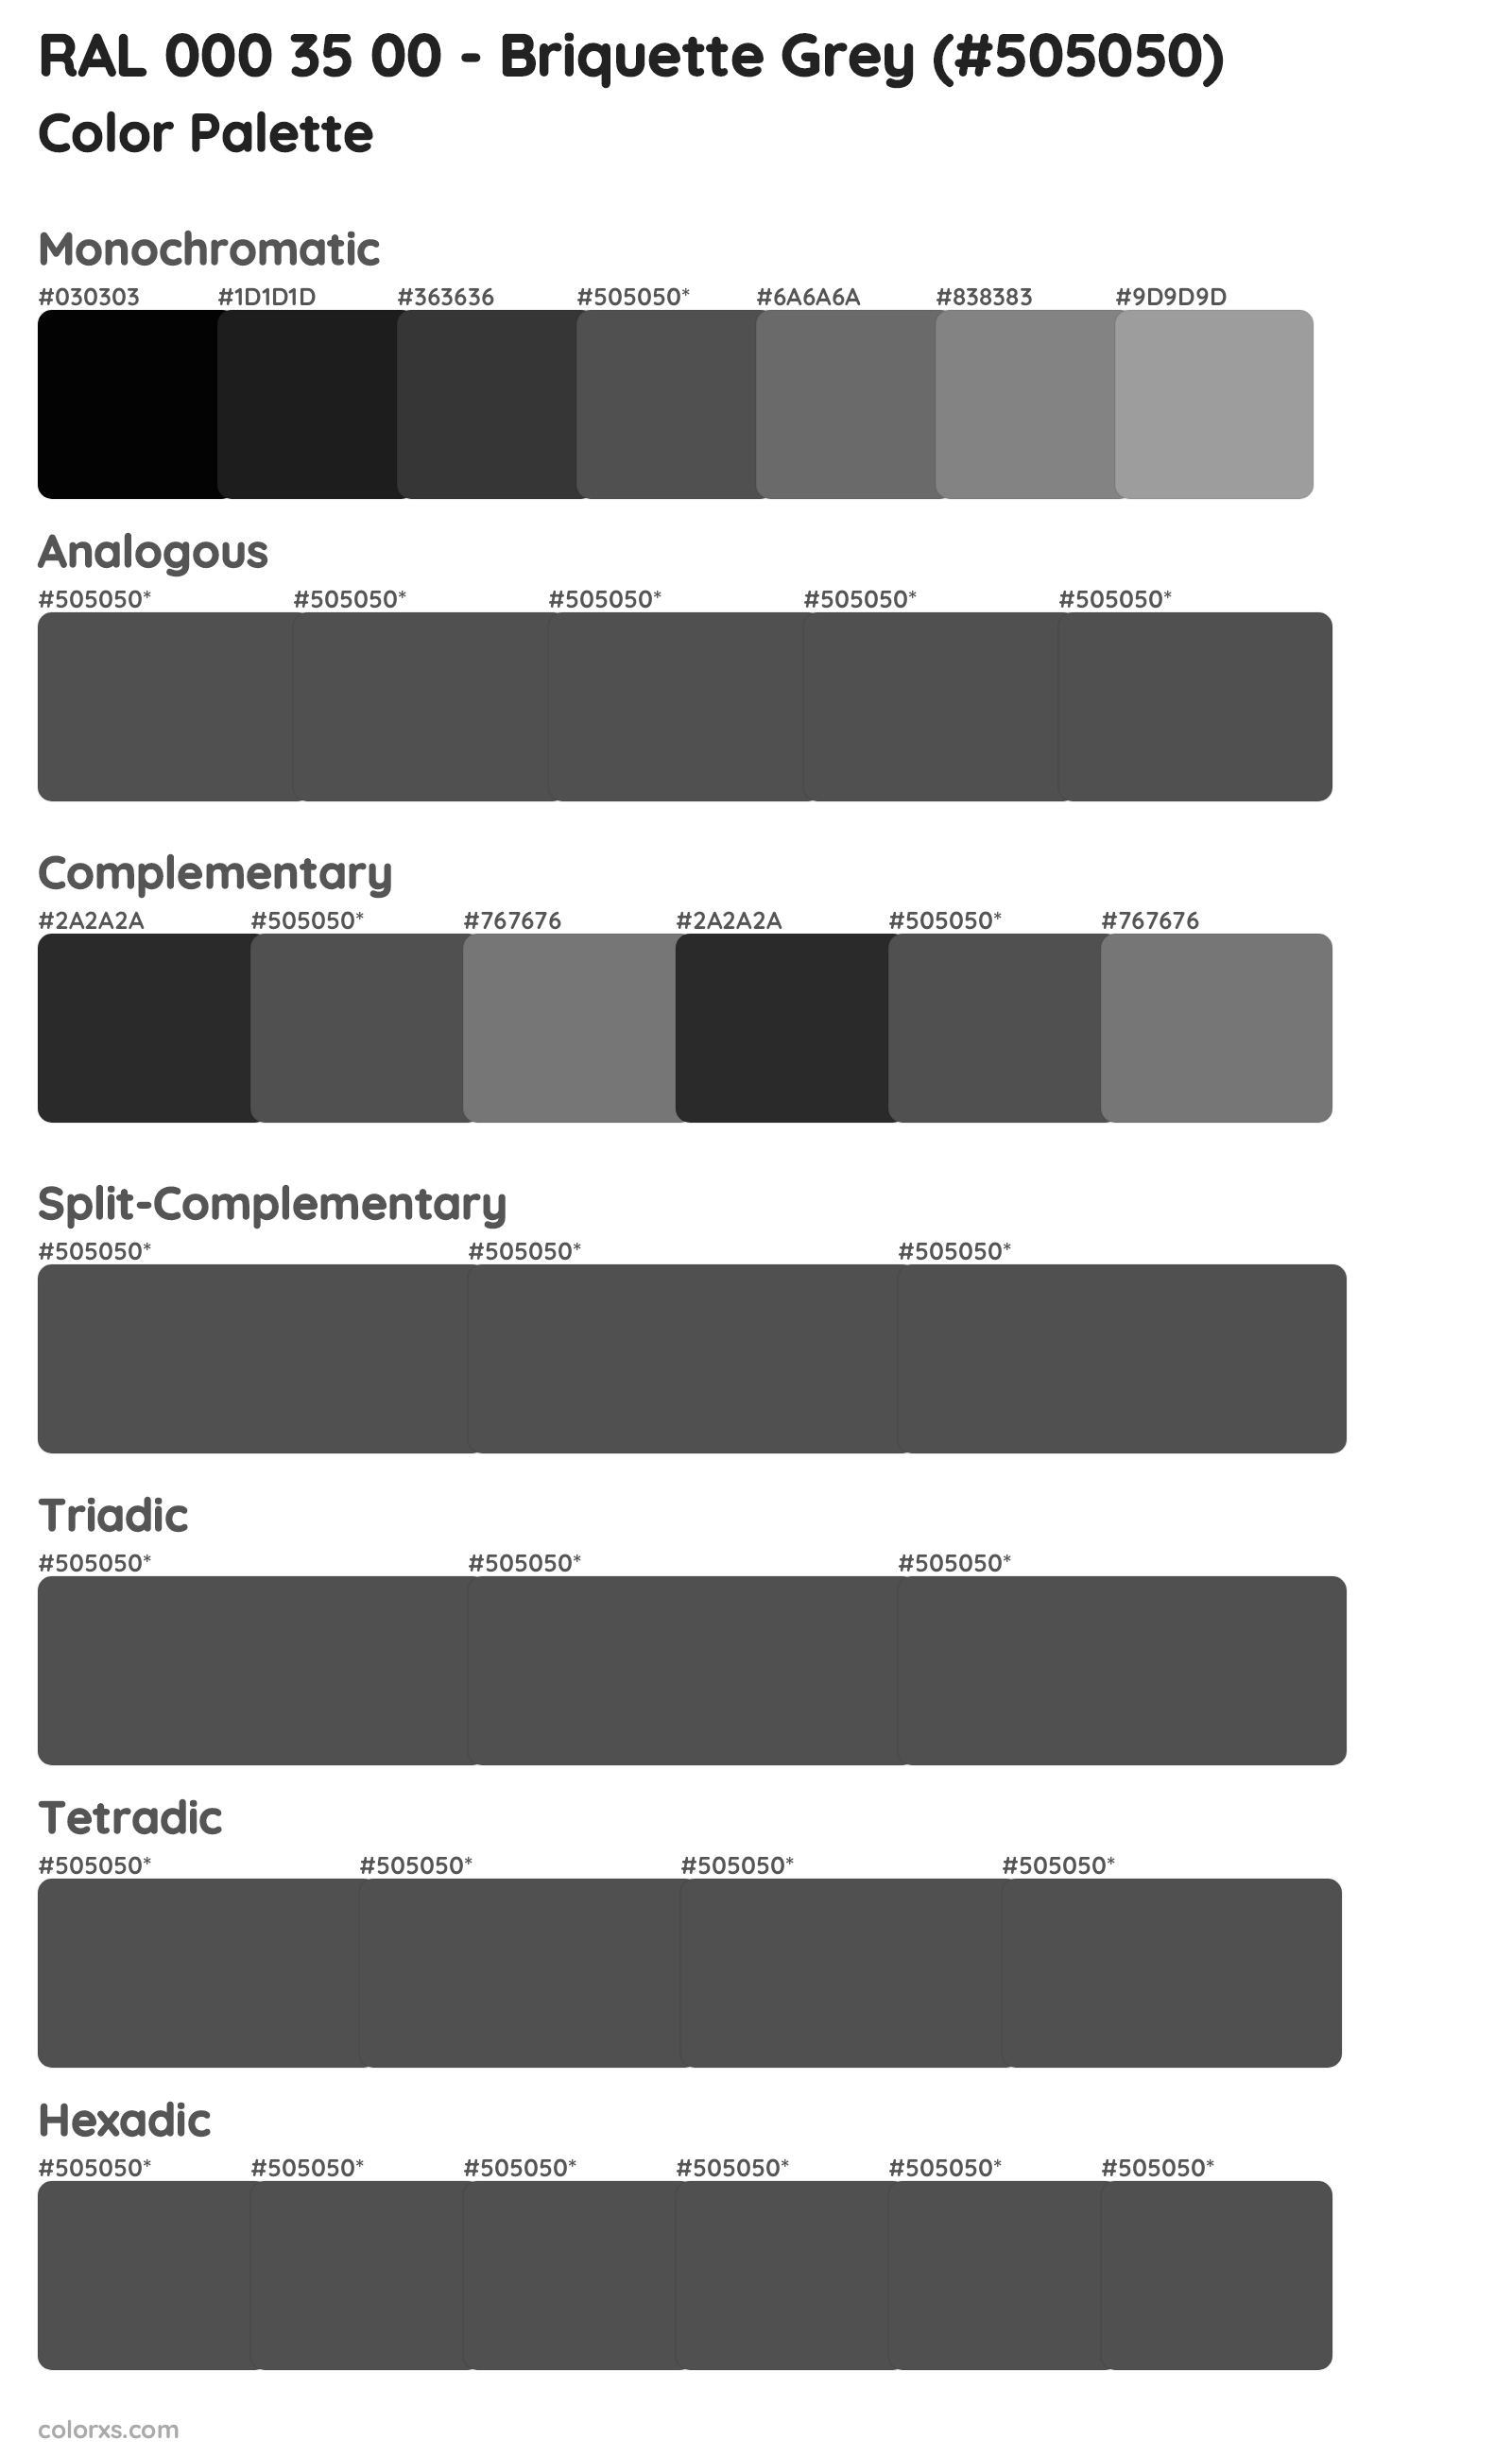 RAL 000 35 00 - Briquette Grey Color Scheme Palettes